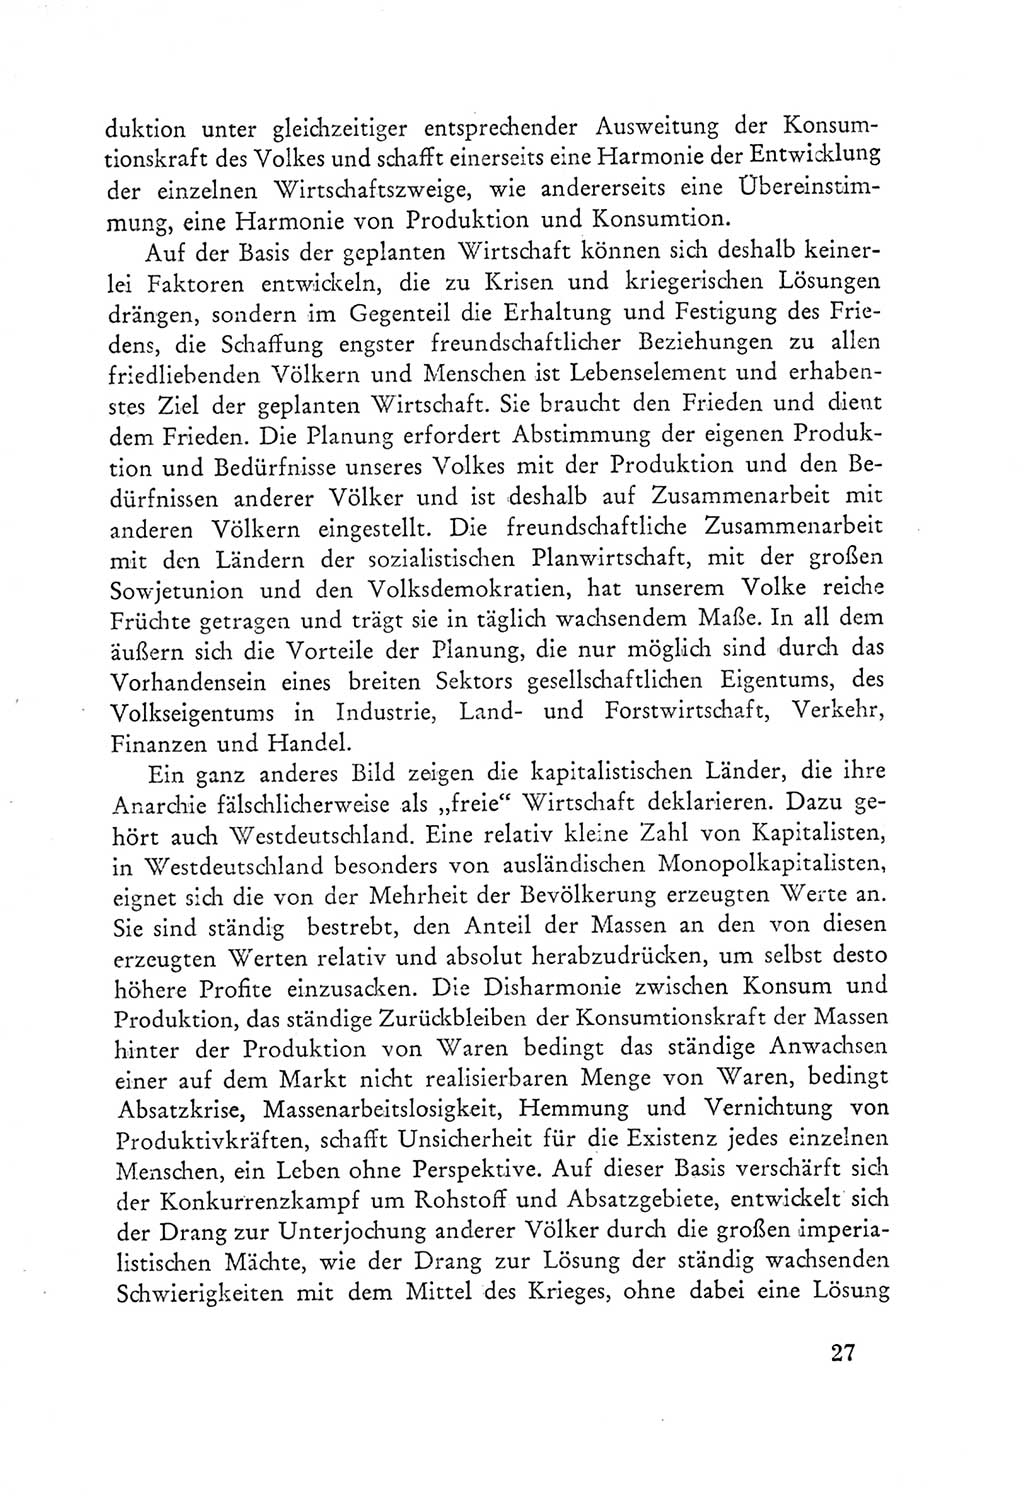 Protokoll der Verhandlungen des Ⅲ. Parteitages der Sozialistischen Einheitspartei Deutschlands (SED) [Deutsche Demokratische Republik (DDR)] 1950, Band 2, Seite 27 (Prot. Verh. Ⅲ. PT SED DDR 1950, Bd. 2, S. 27)